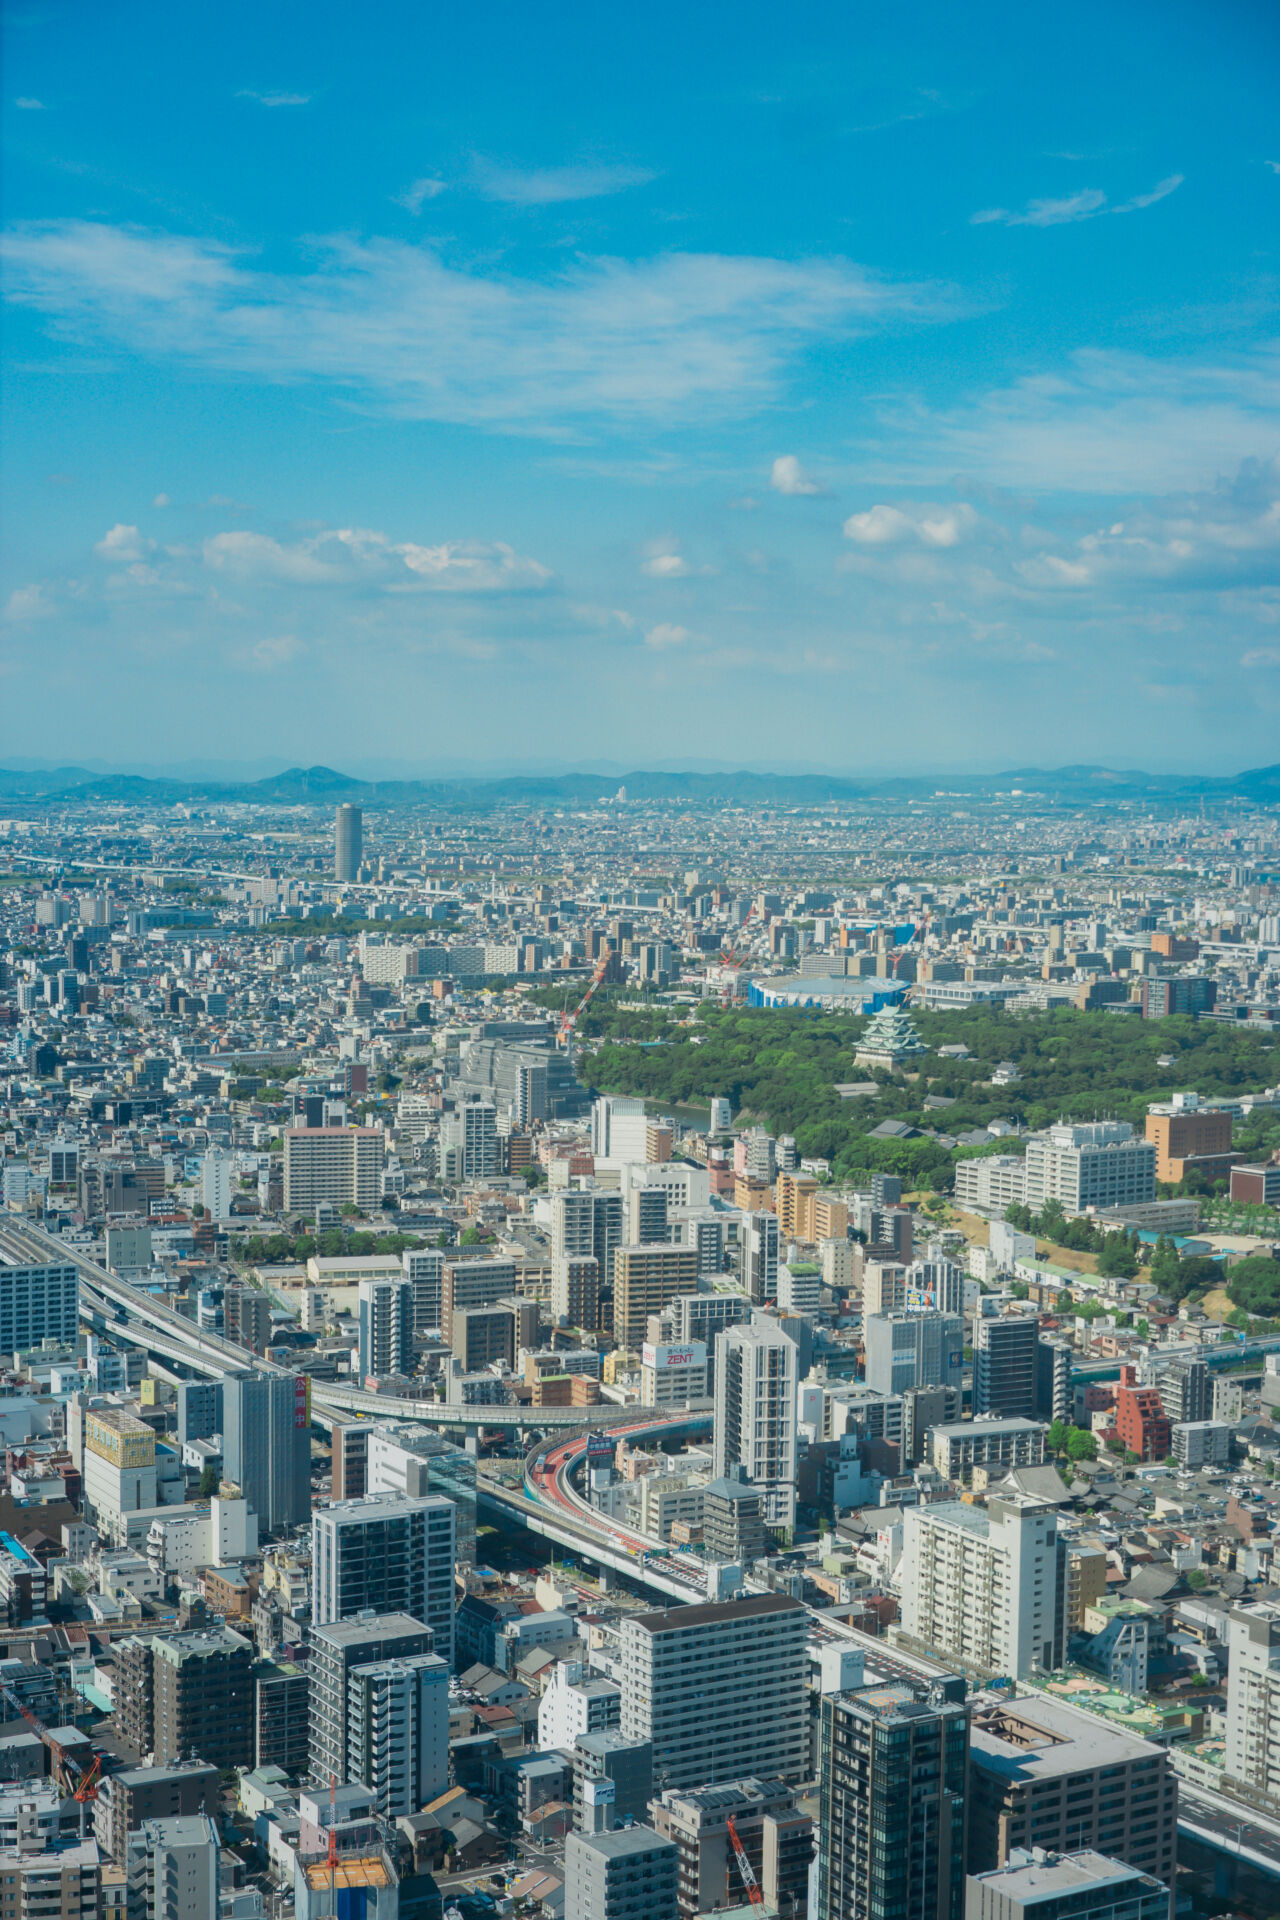 凝視下方的城市，尋找名古屋城等著名地標。